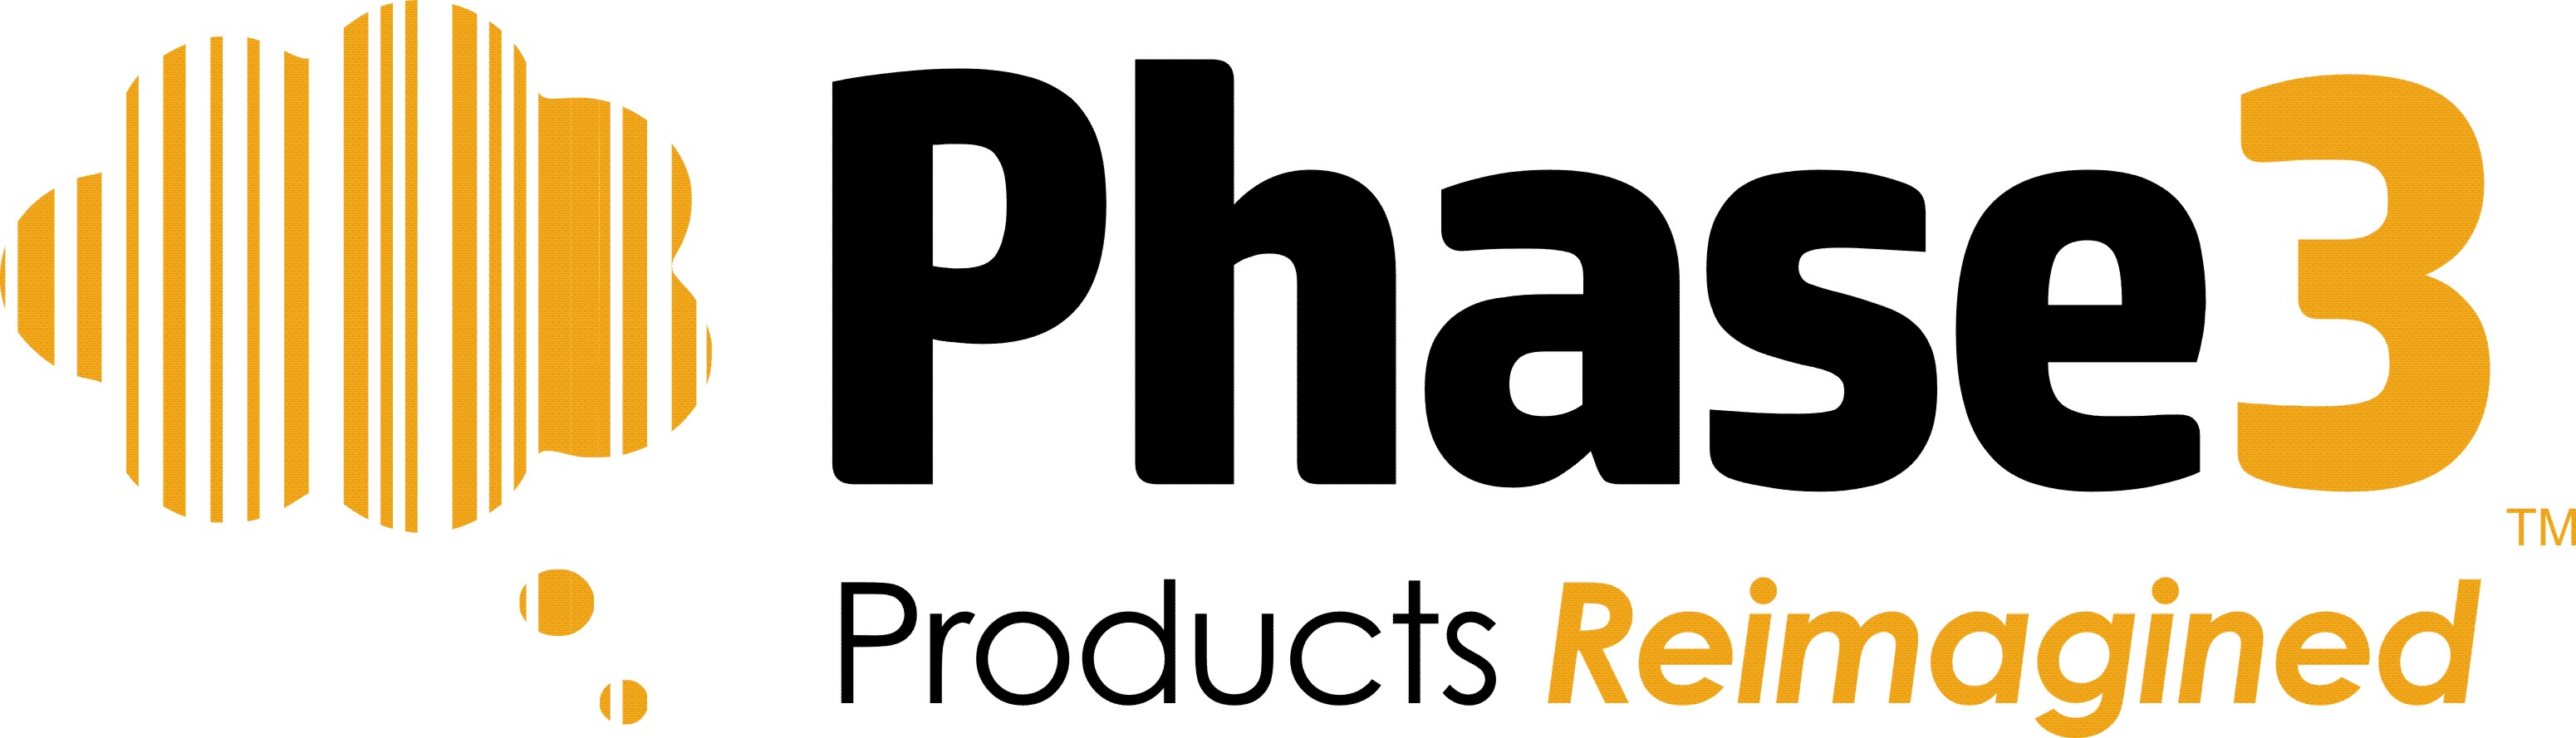 Phase 3 Products logo